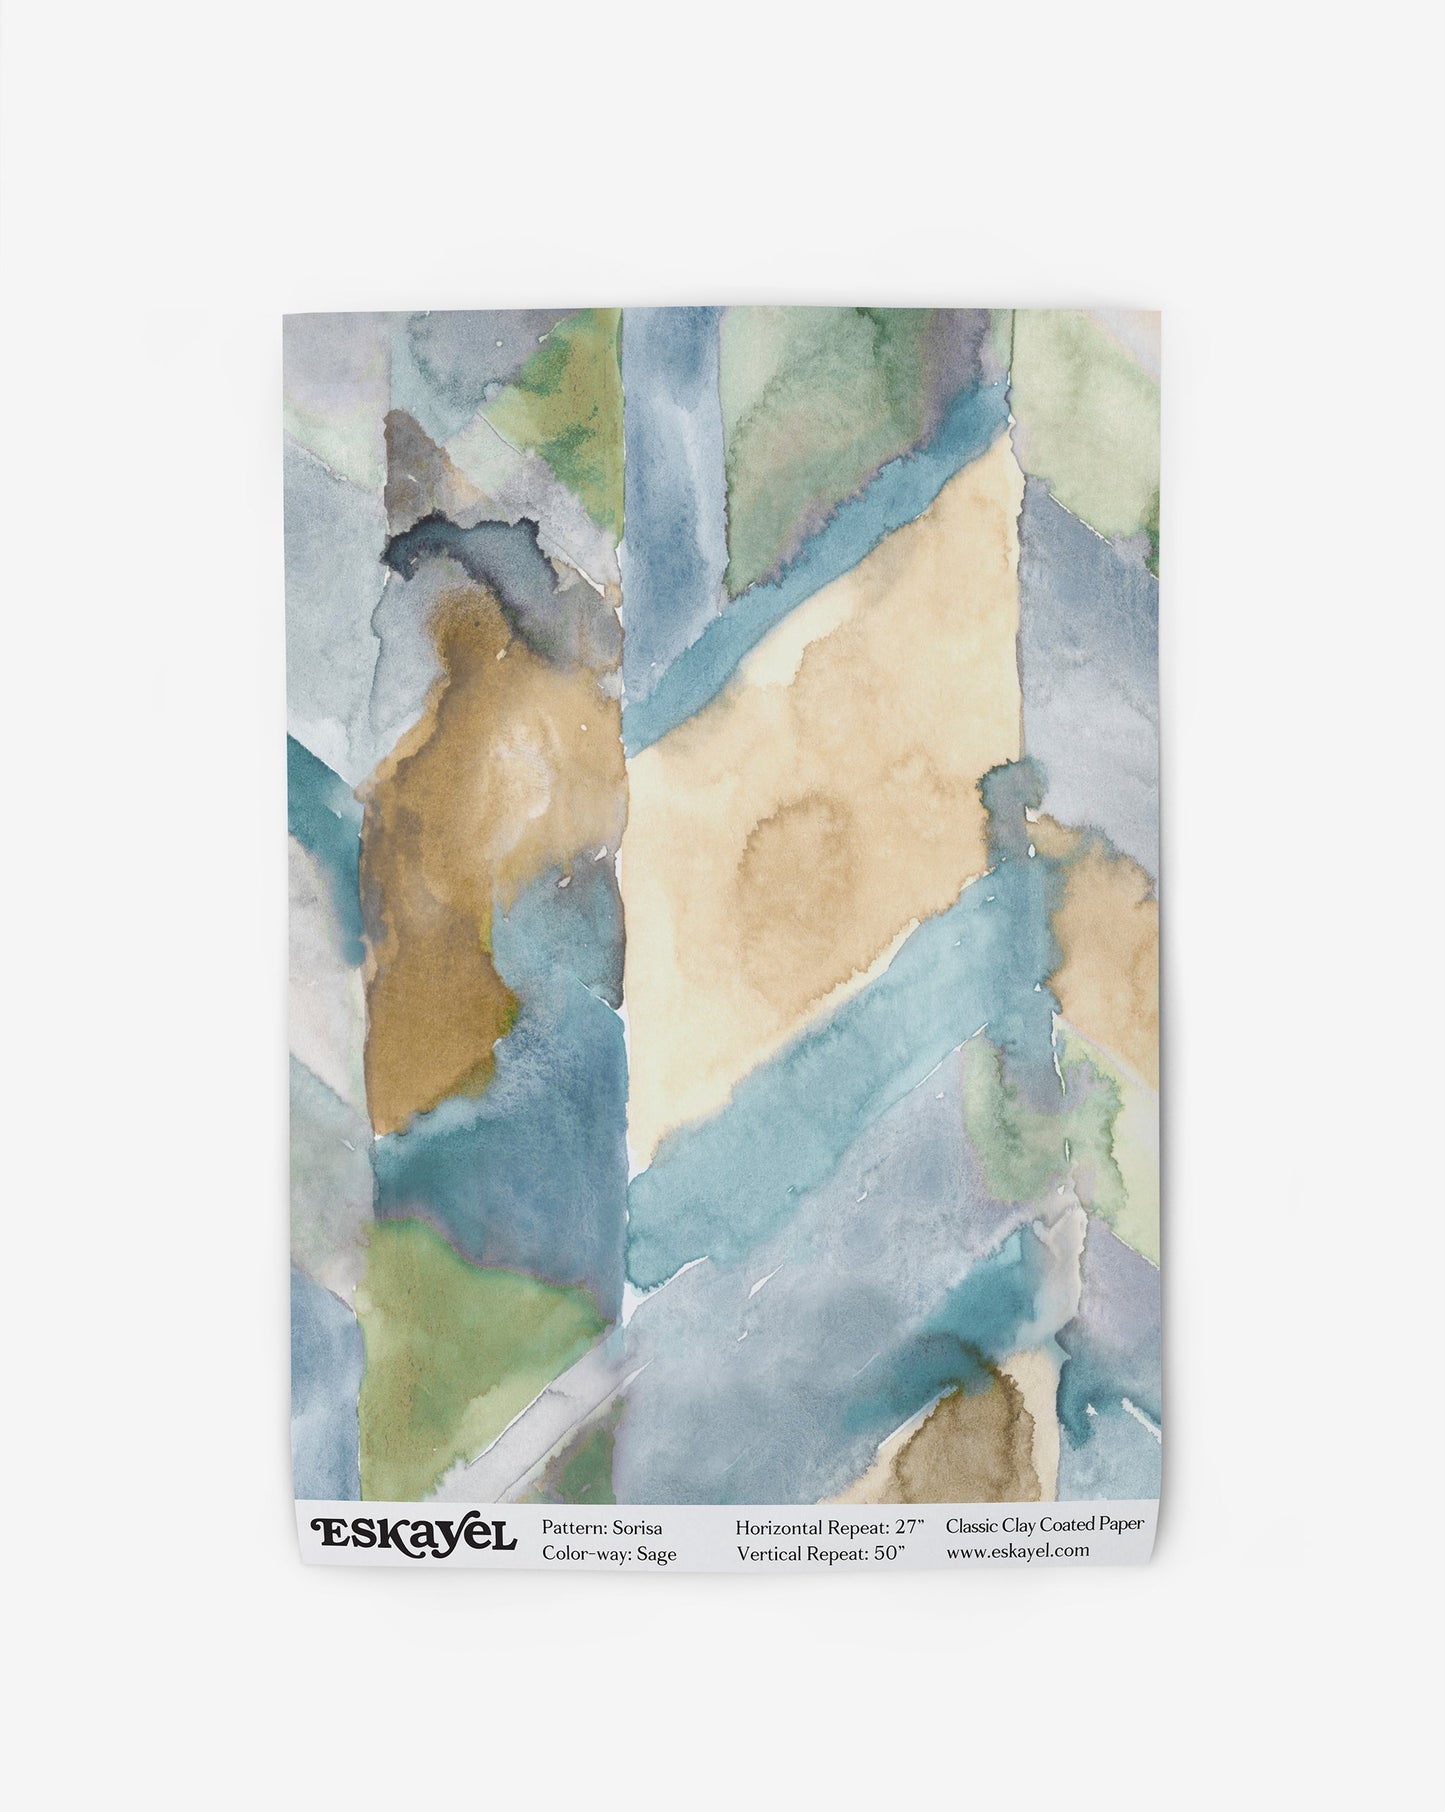 a sample of the Sorisa Wallpaper Sample Sage watercolor pattern